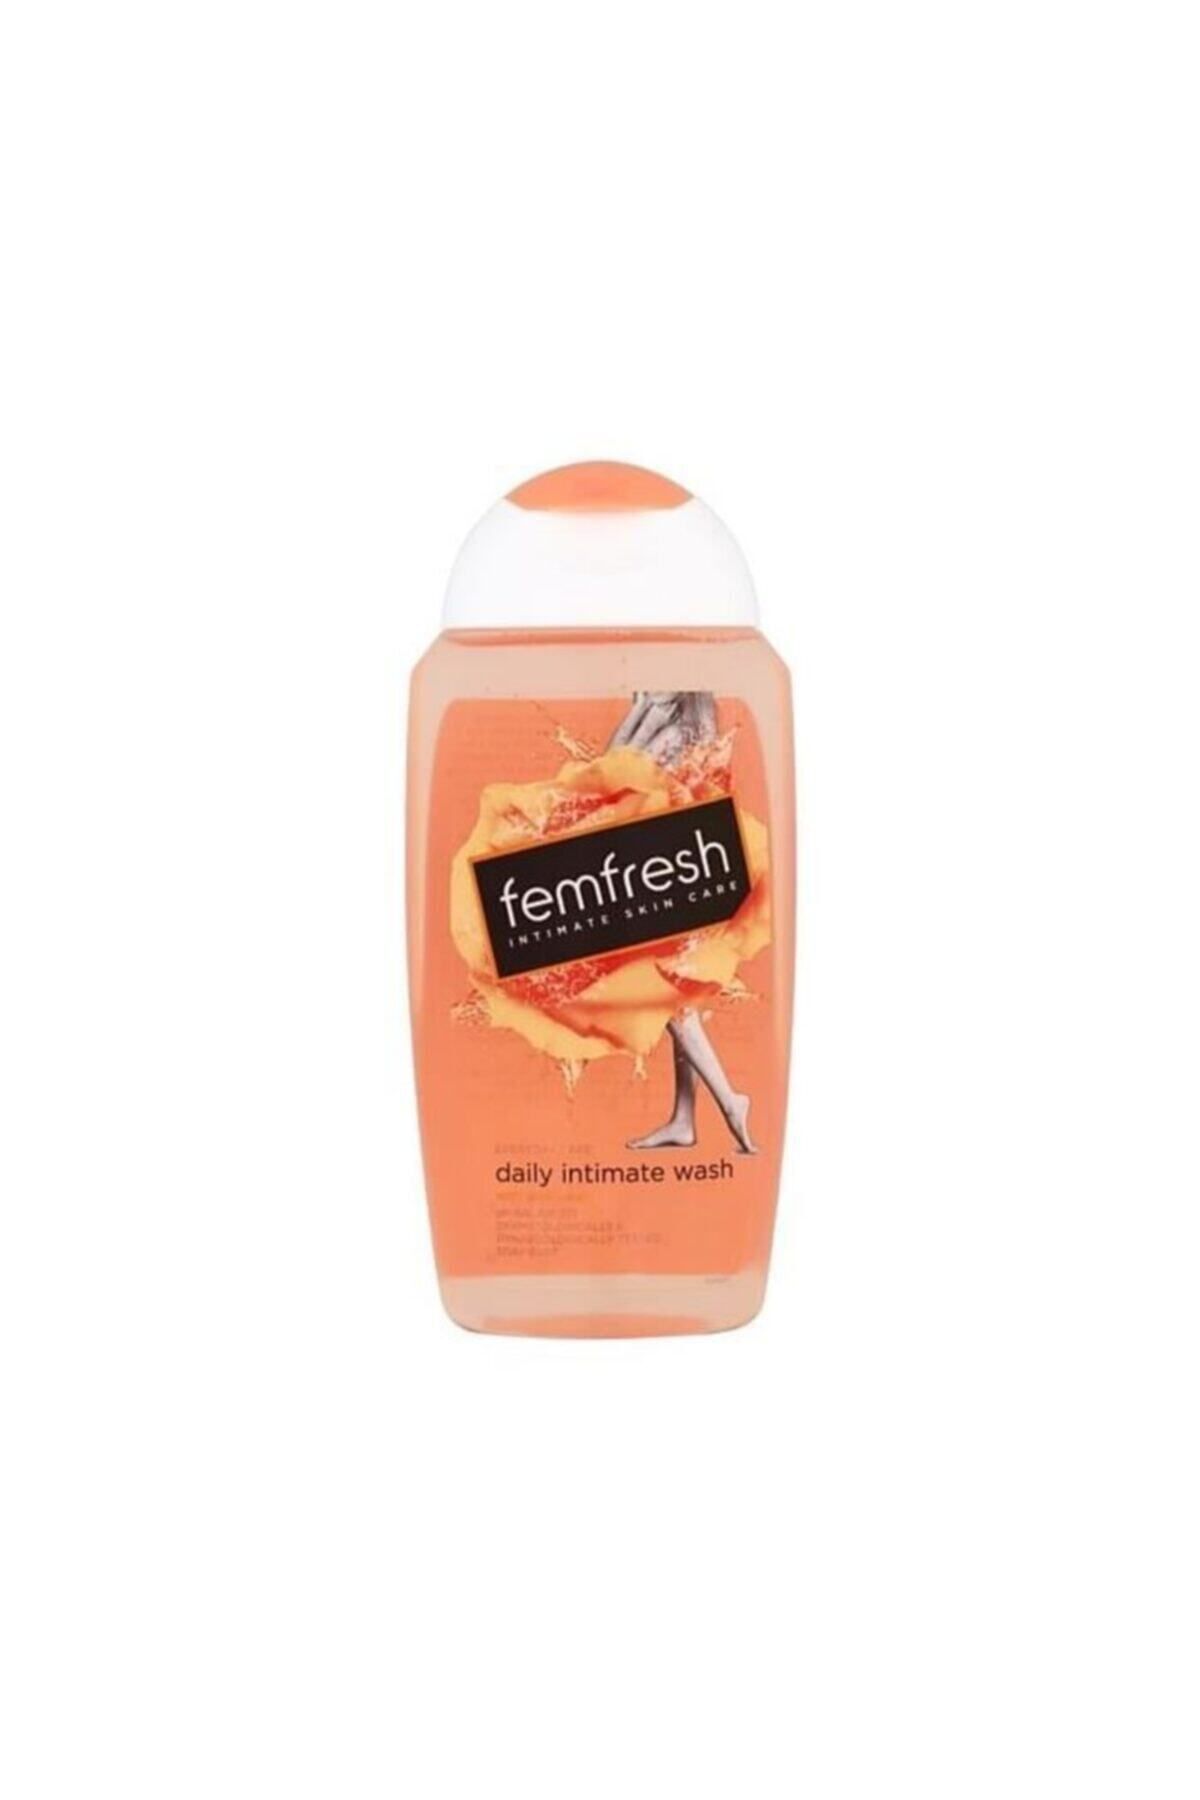 Femfresh Dış Genital Bölge Günlük Yıkama Jeli - Daily Intimate Wash 250 ml